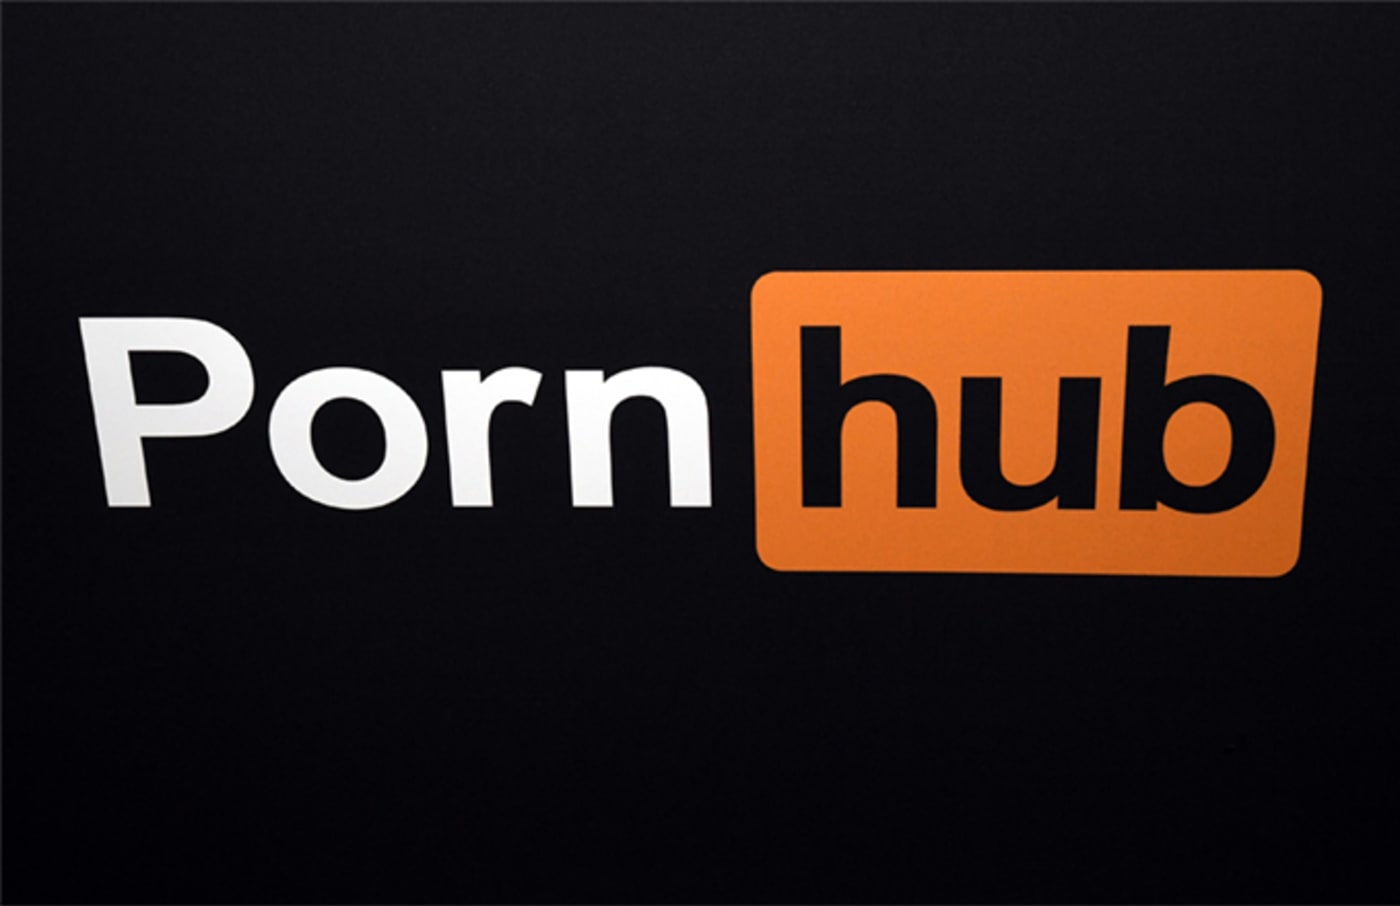 porn hub logo getty